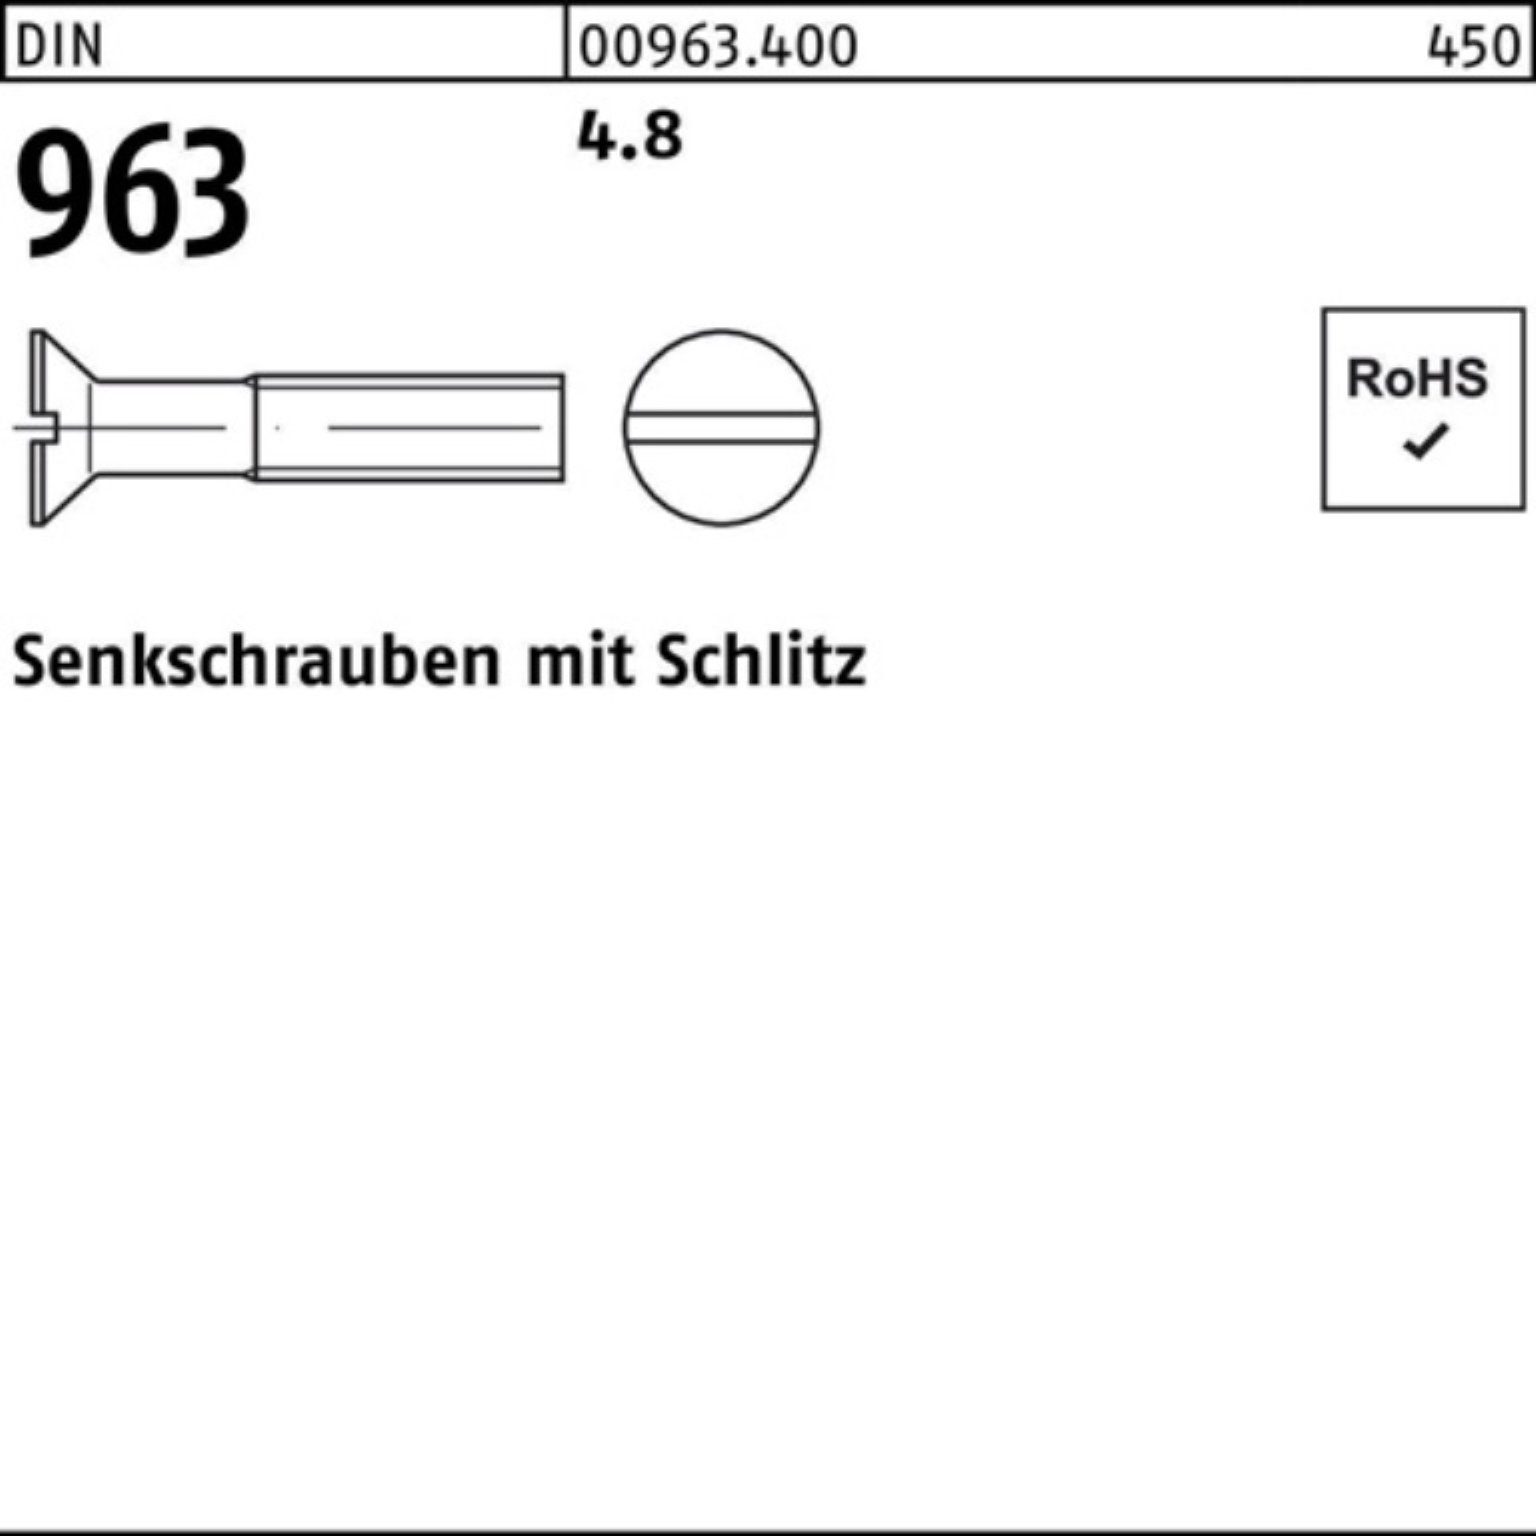 Reyher Senkschraube 100er Pack Senkschraube 96 DIN DIN 100 4.8 Stück 963 100 M10x Schlitz